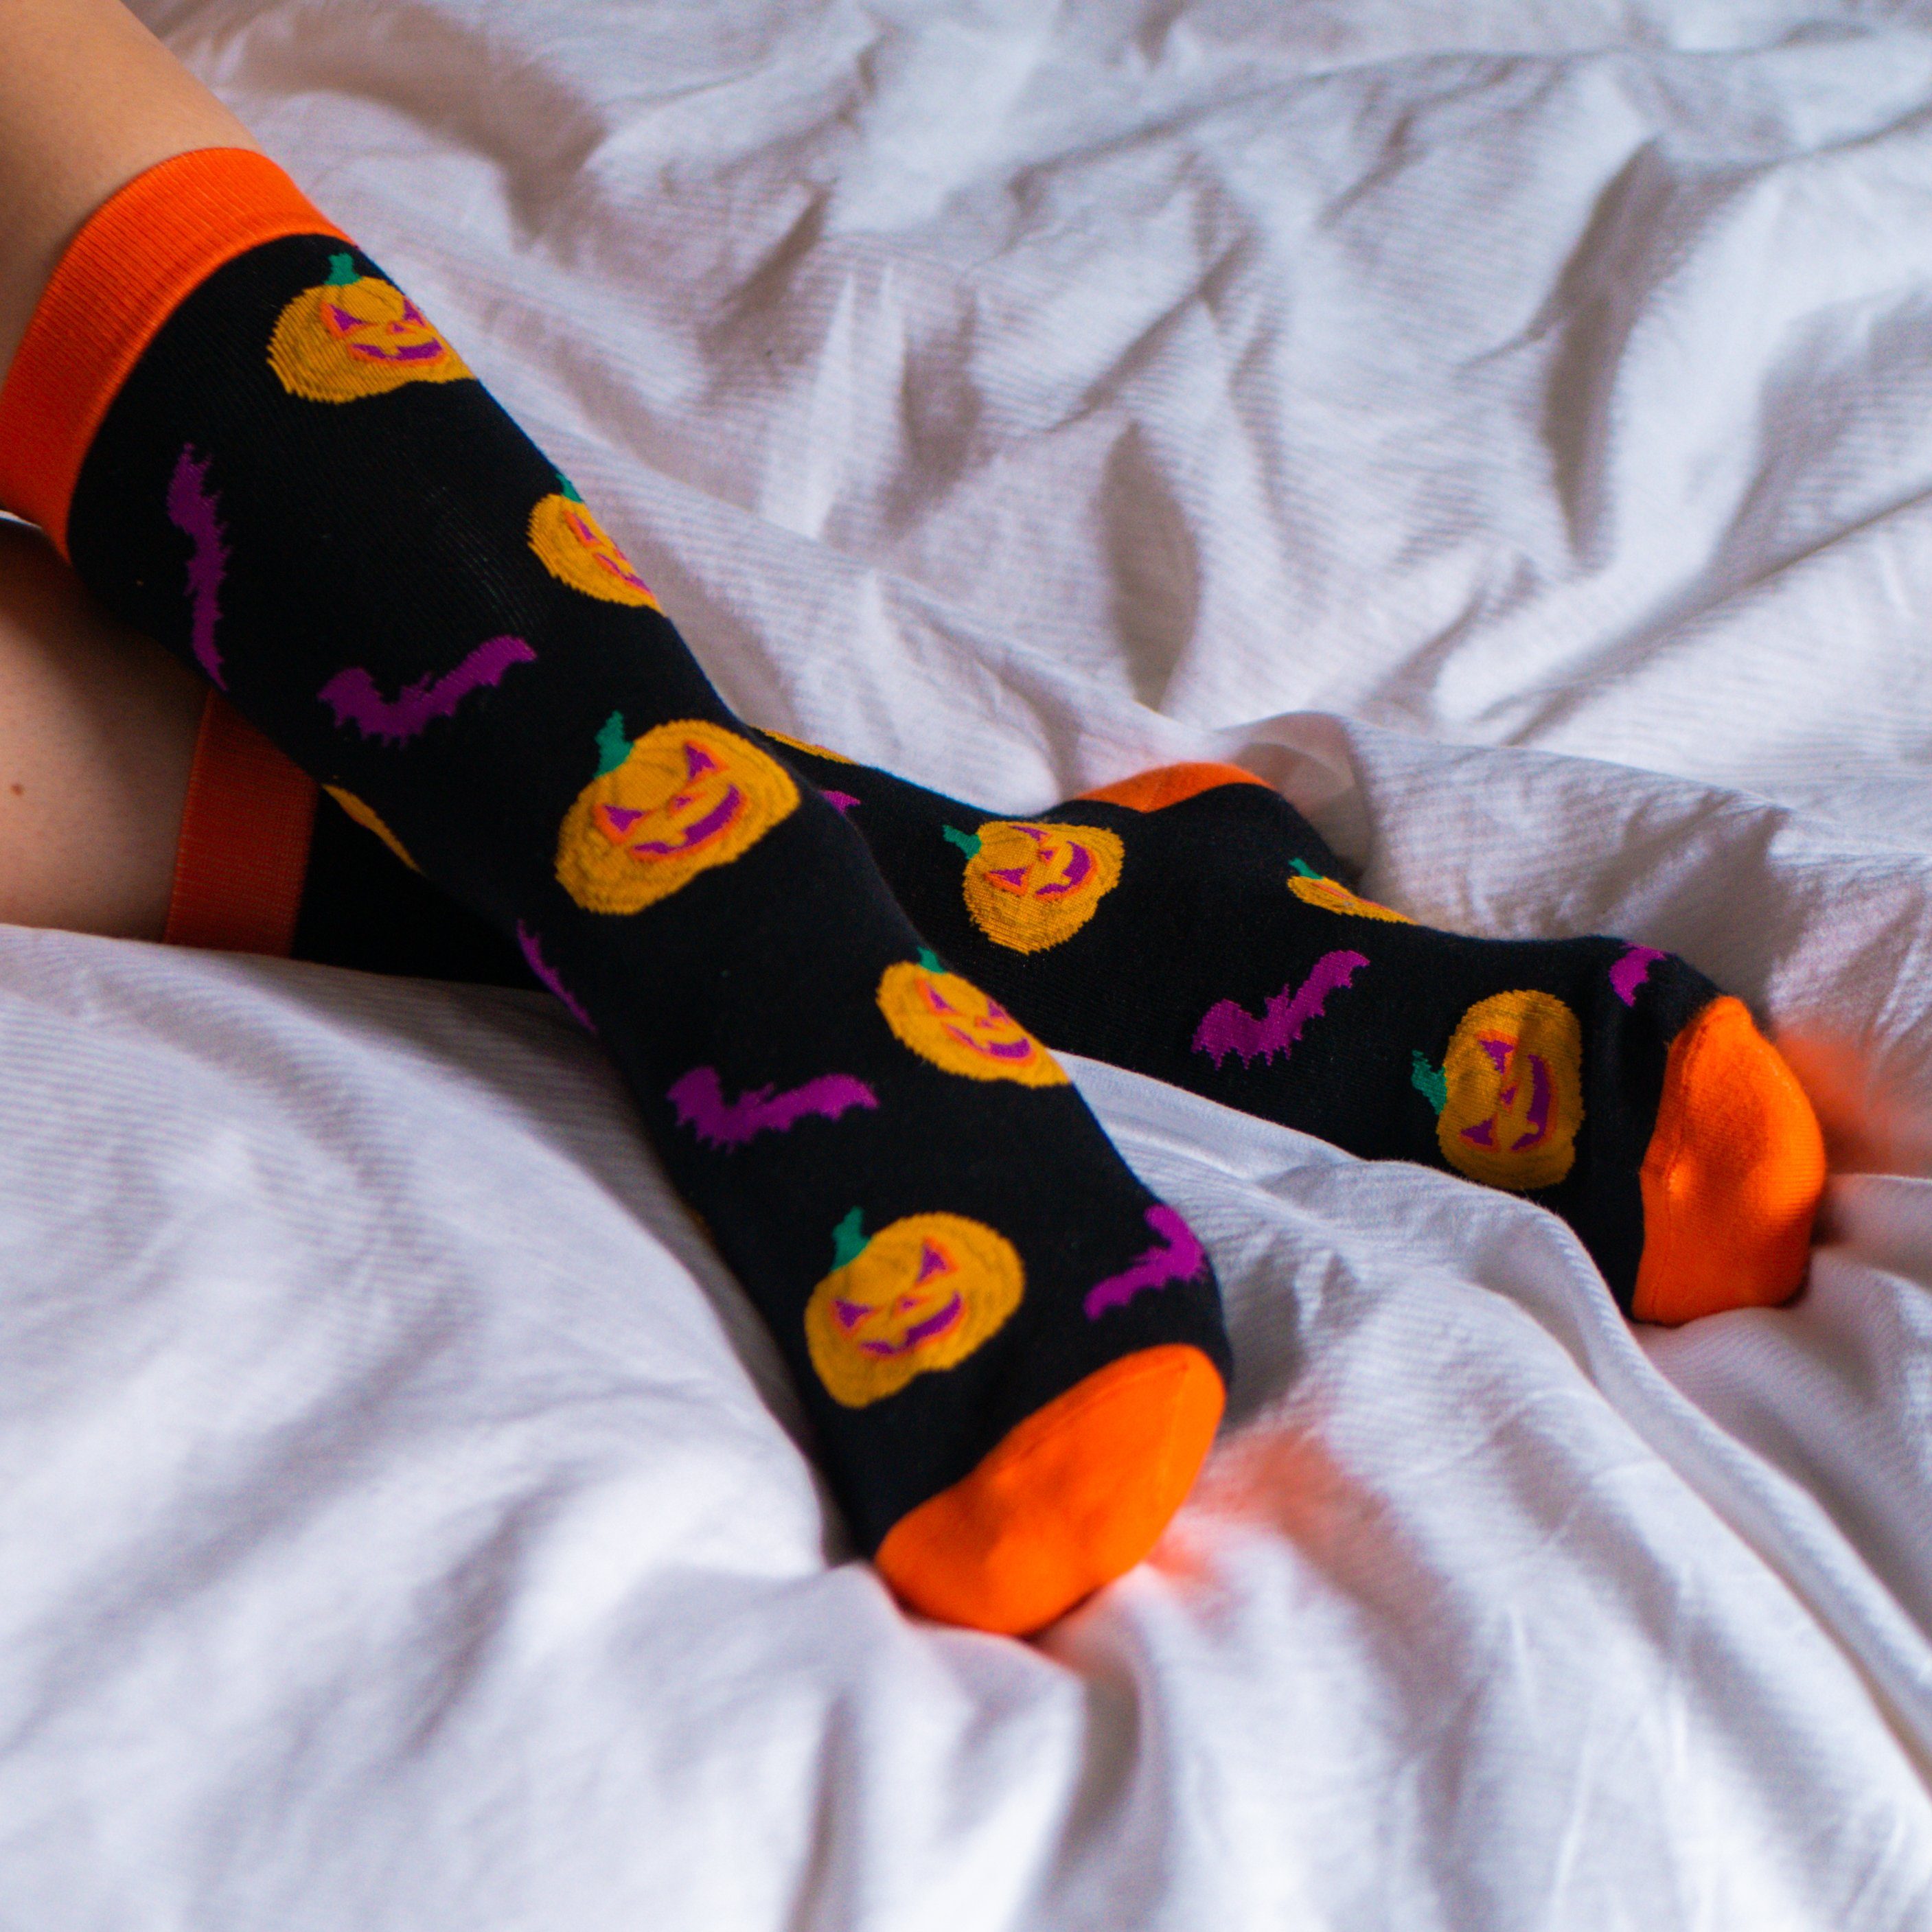 Herren TwoSocks Damen, lustige Kürbis Halloween Socken Freizeitsocken Socken Einheitsgröße &